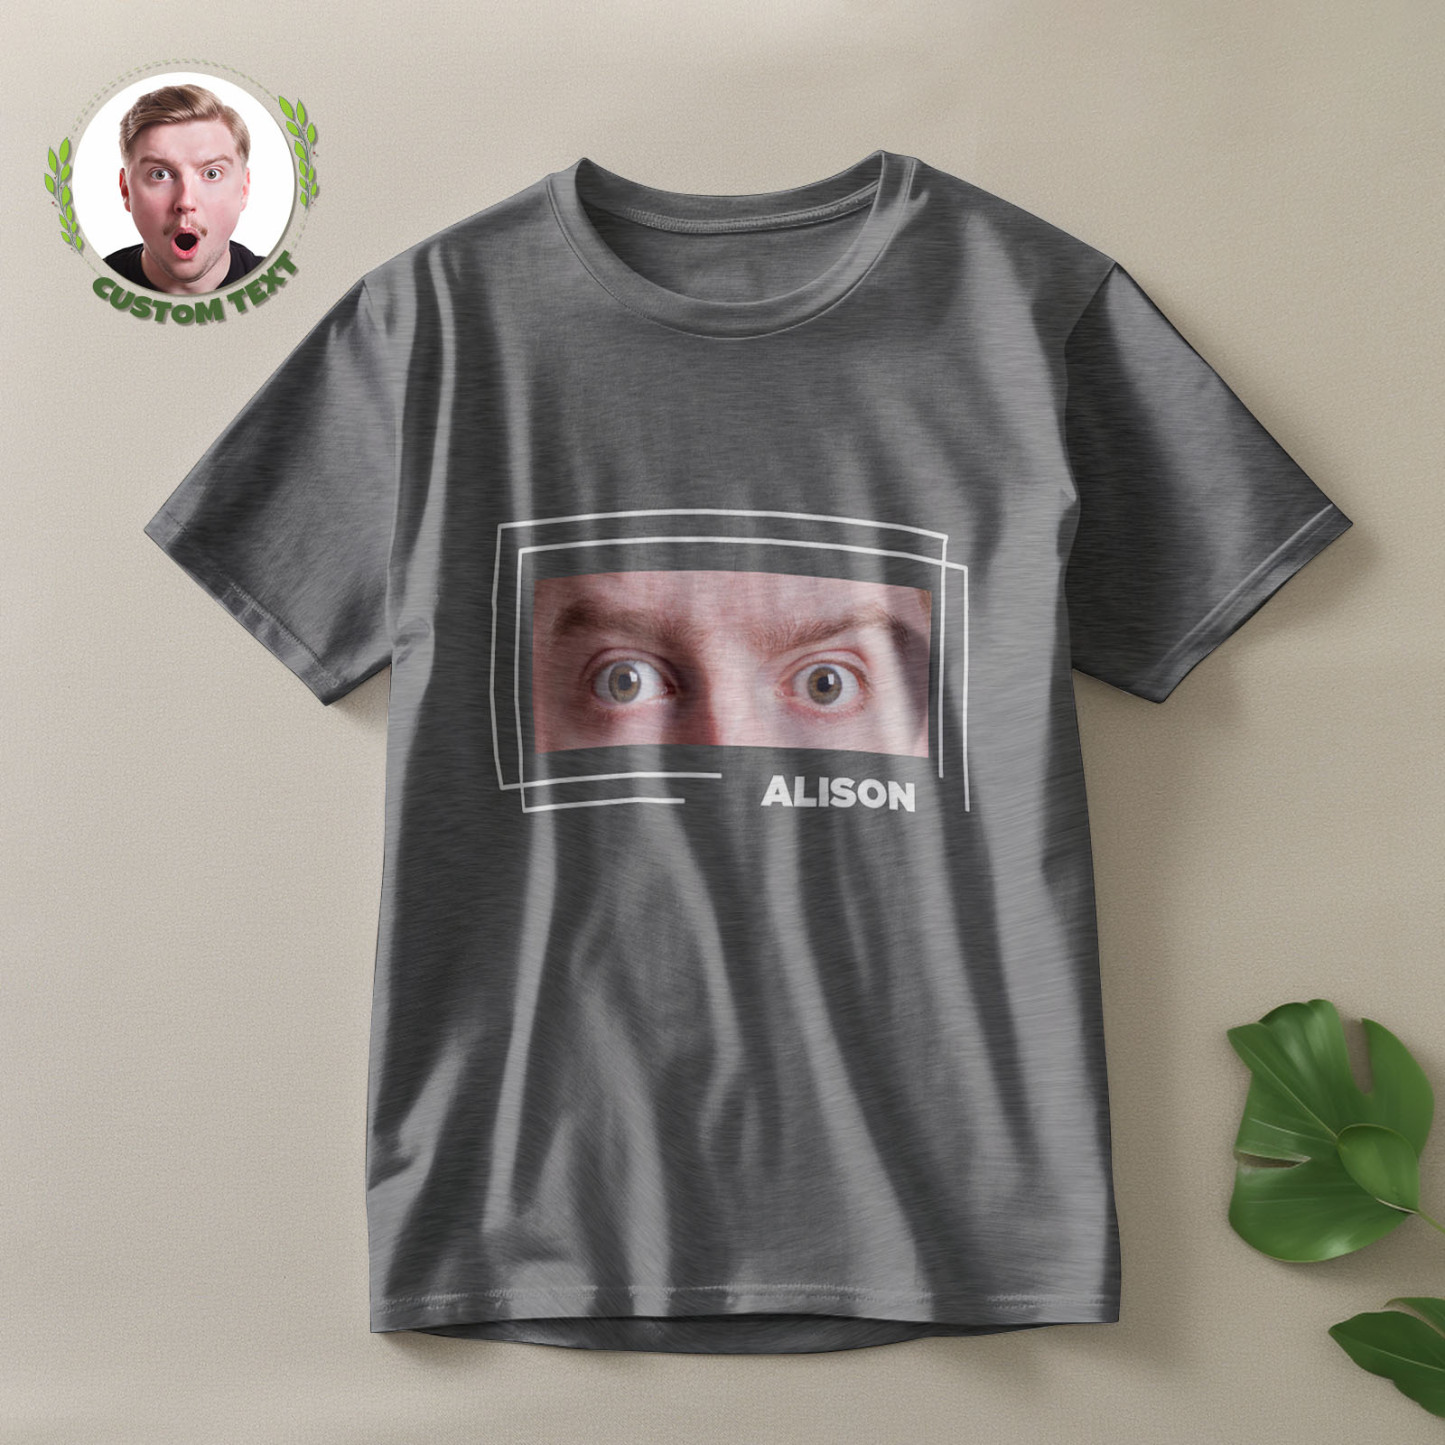 T-shirt Mit Individuellen Augen Und Namen, Lustiges T-shirt Mit Großen Augen, Geschenk Für Paare - 